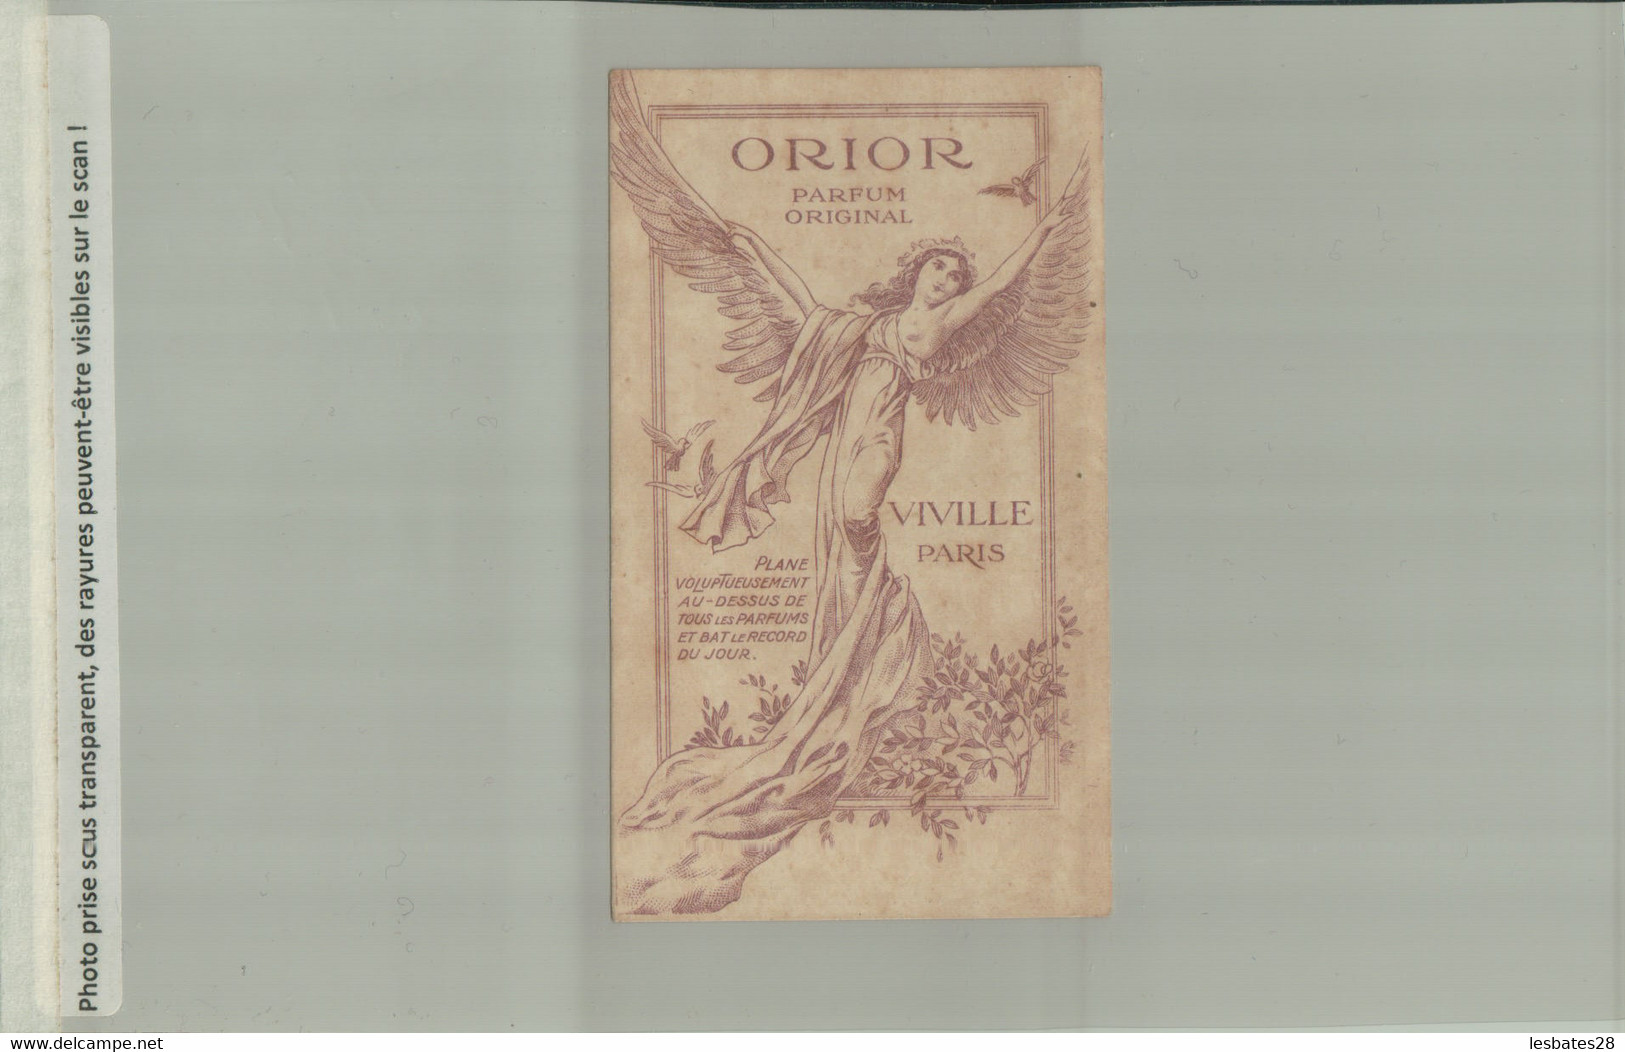 PUBLICITE Parfum Viville Orior Paris "RARE" Illustration  Femme Ailes Oiseau Allégories Elfes  (2021-JUIN-Divers 501) - Anciennes (jusque 1960)